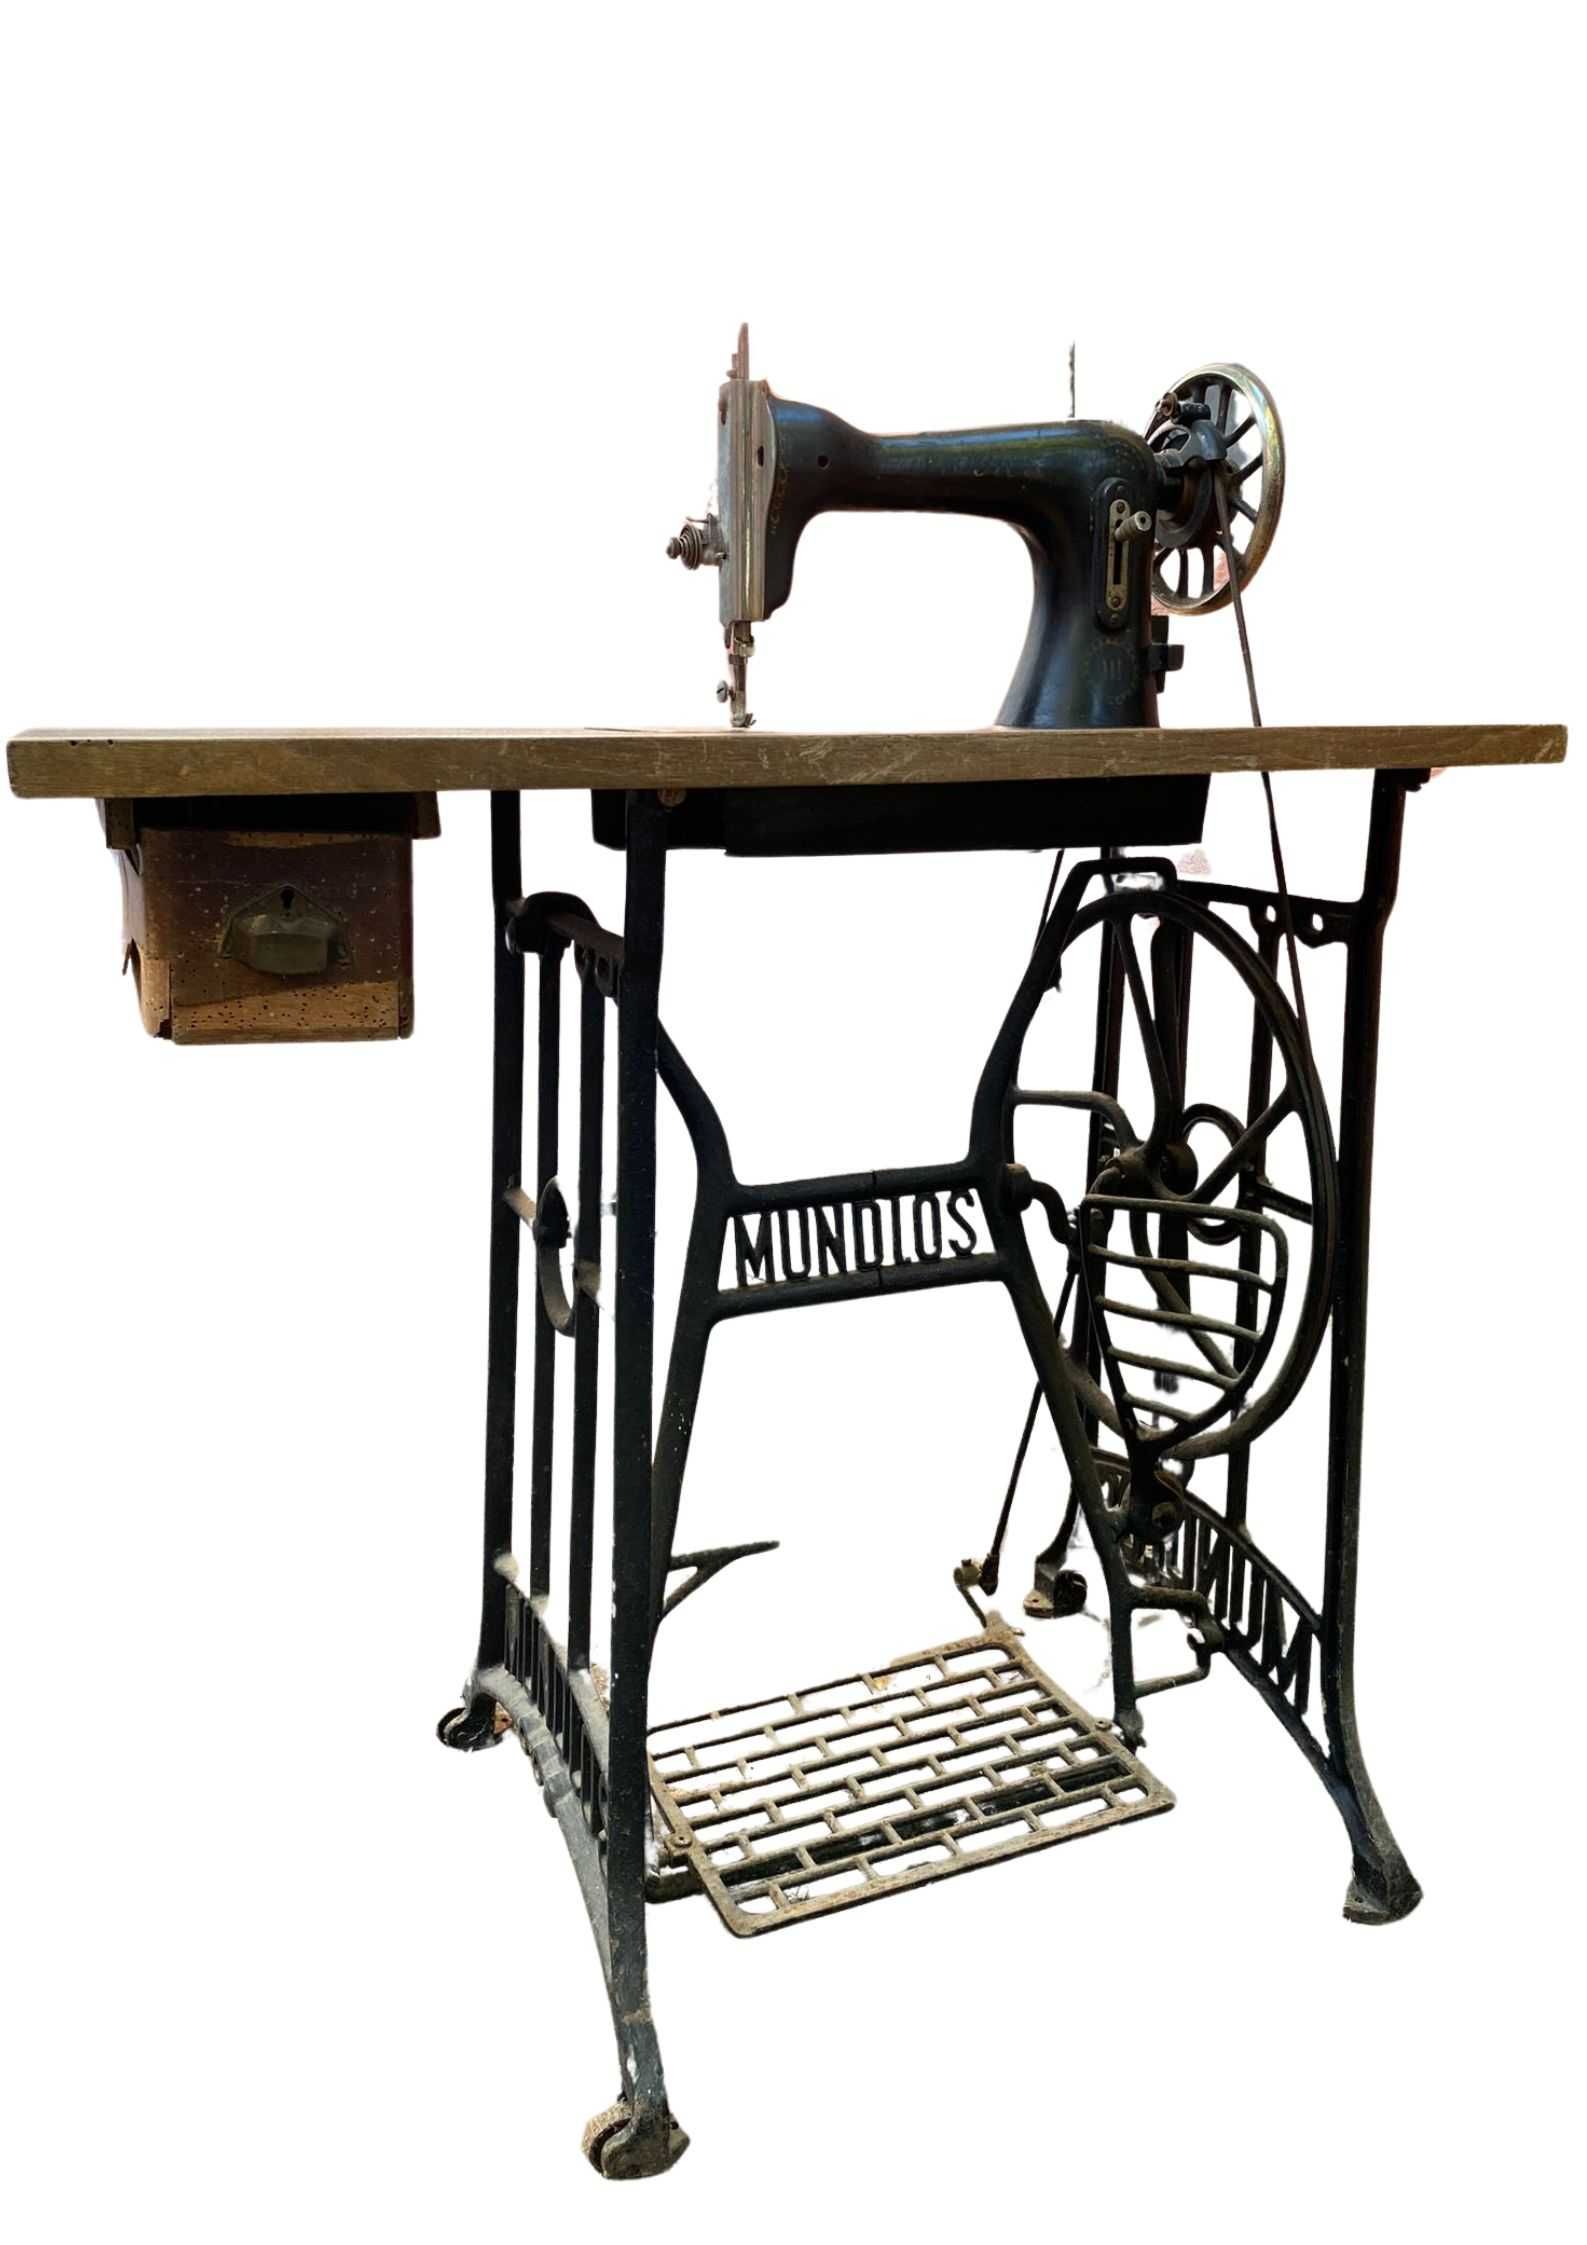 Máquina de costura Mondlus Original Victoria